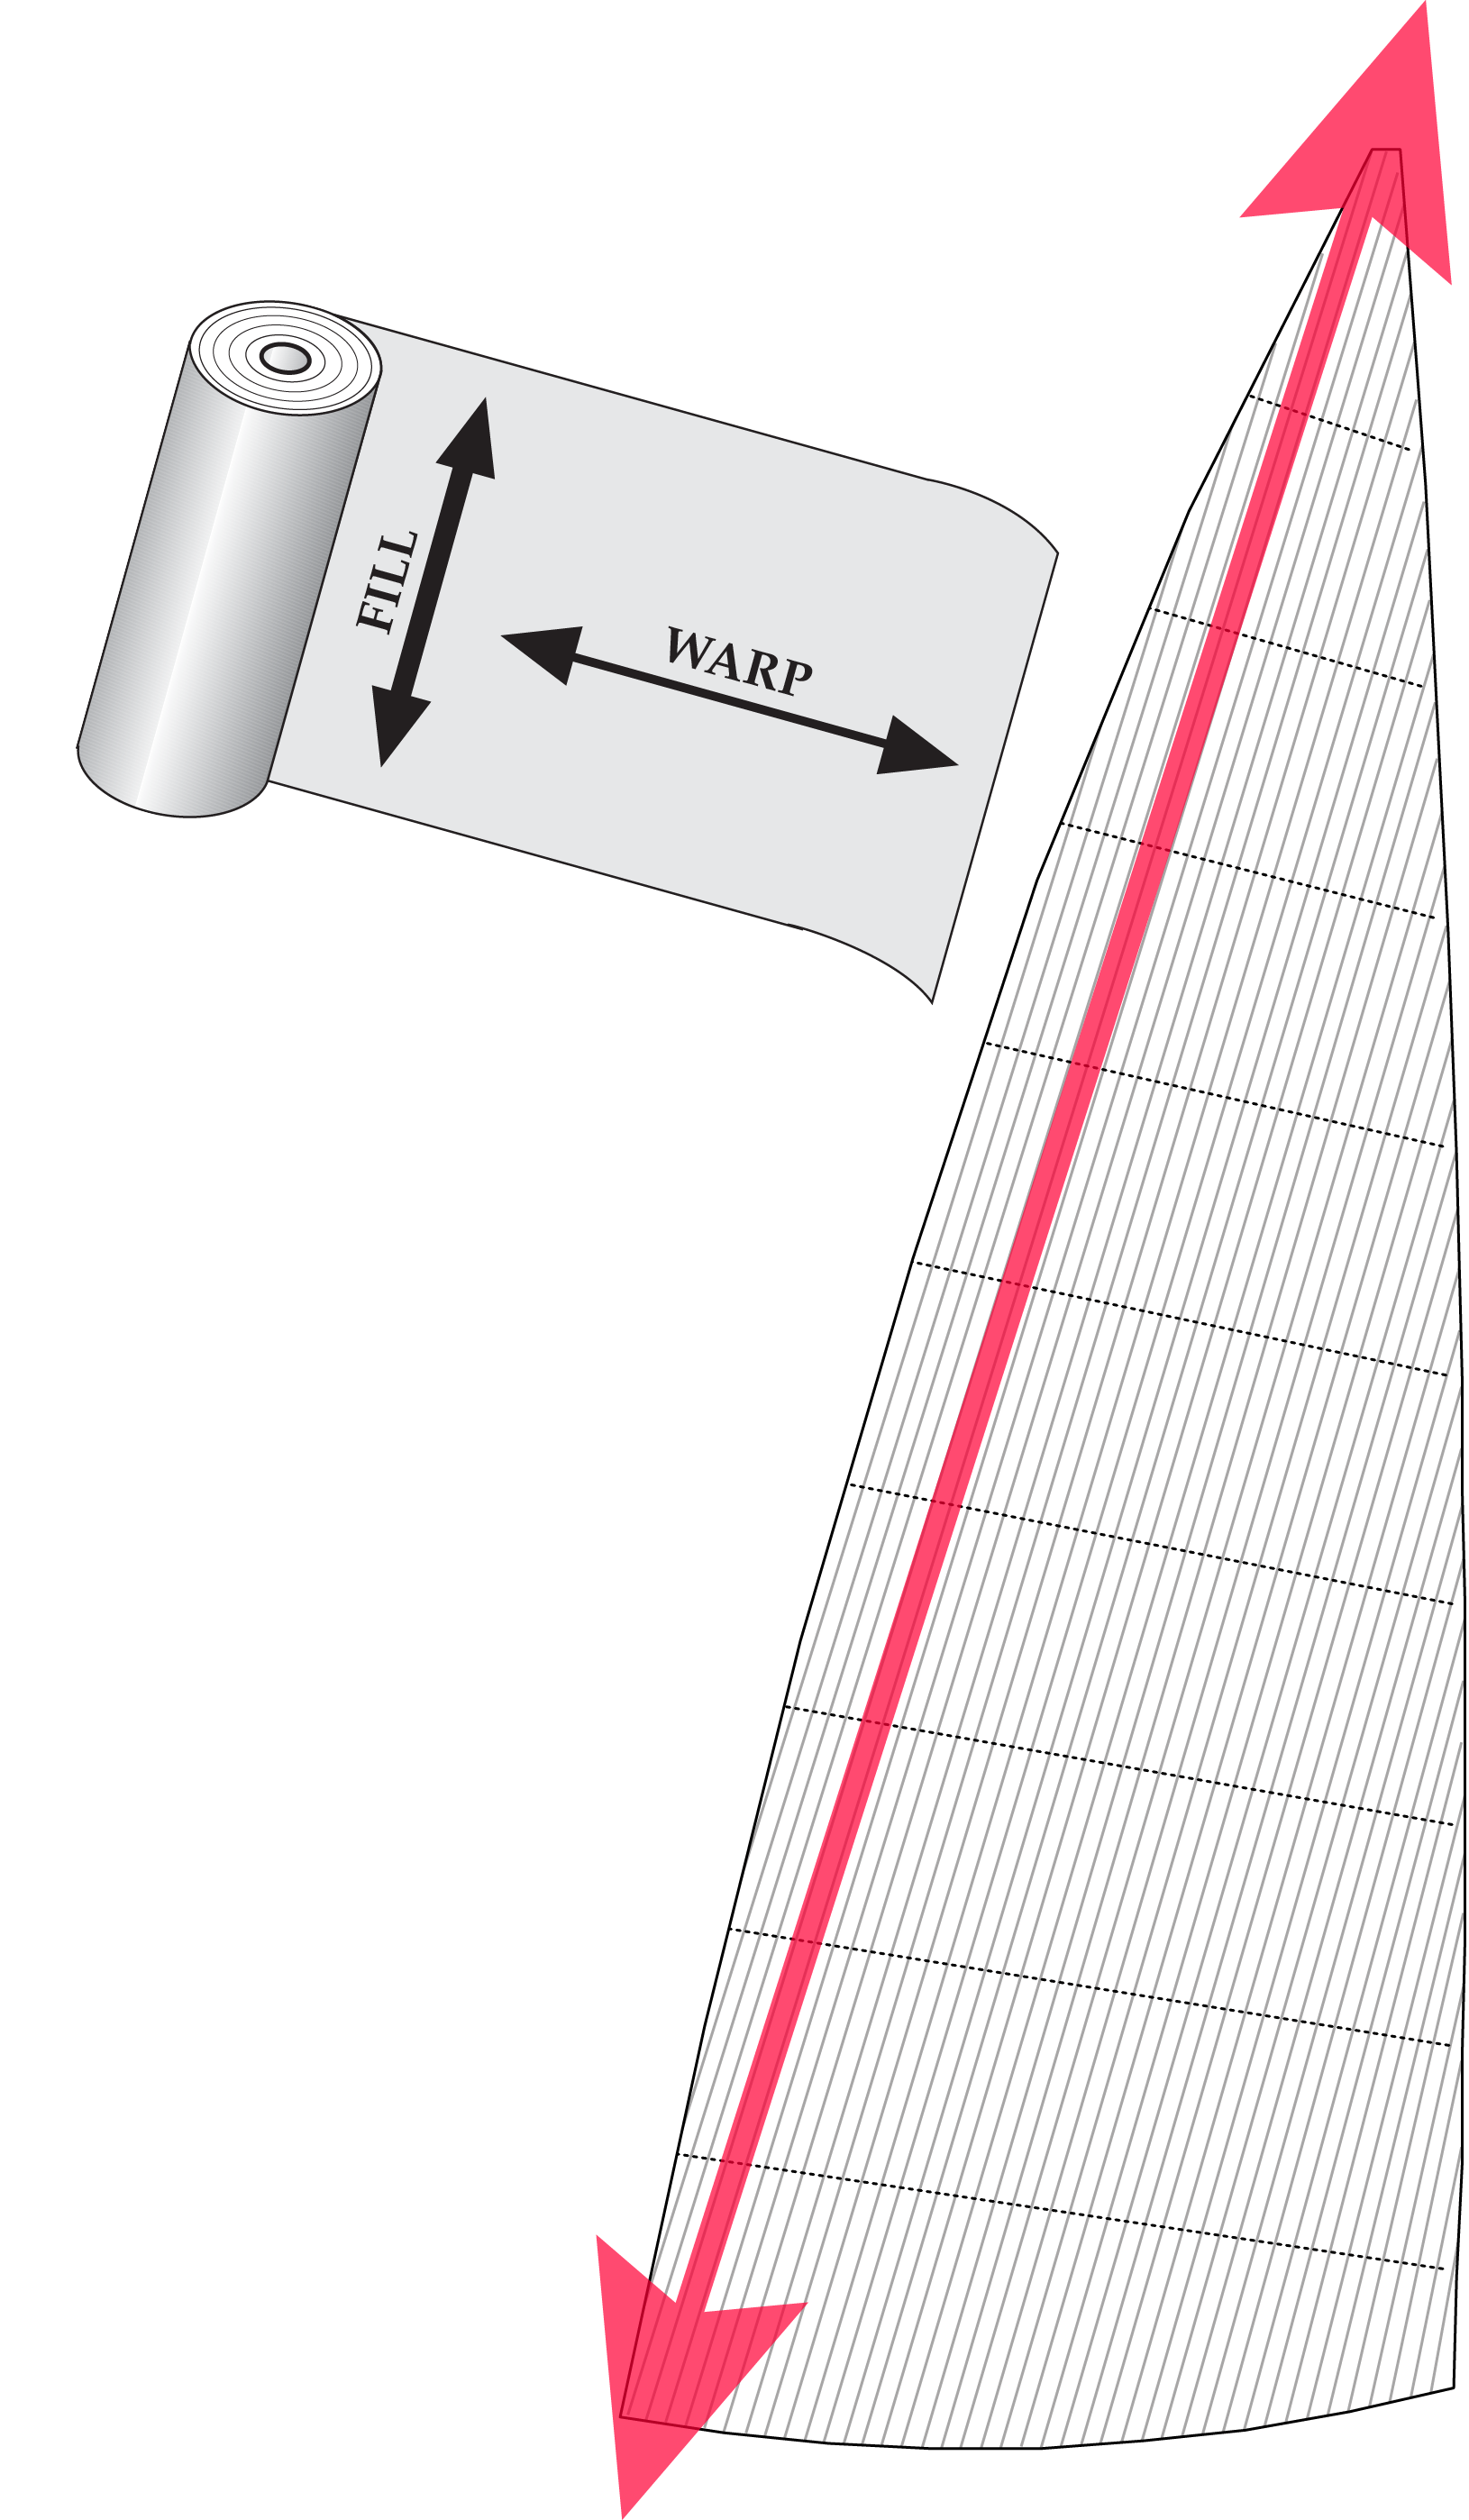 Diagramm 1. Quer geschnittene Paneele mit "Fill Oriented"-Tuch, das senkrecht zum geraden Achterliek ausgerichtet ist. Der Einschub zeigt die Fadenrichtungen "Schuss" und "Kette". Bei einem schussorientierten Gewebe sind die Schussfäden stärker als die Kettfäden.